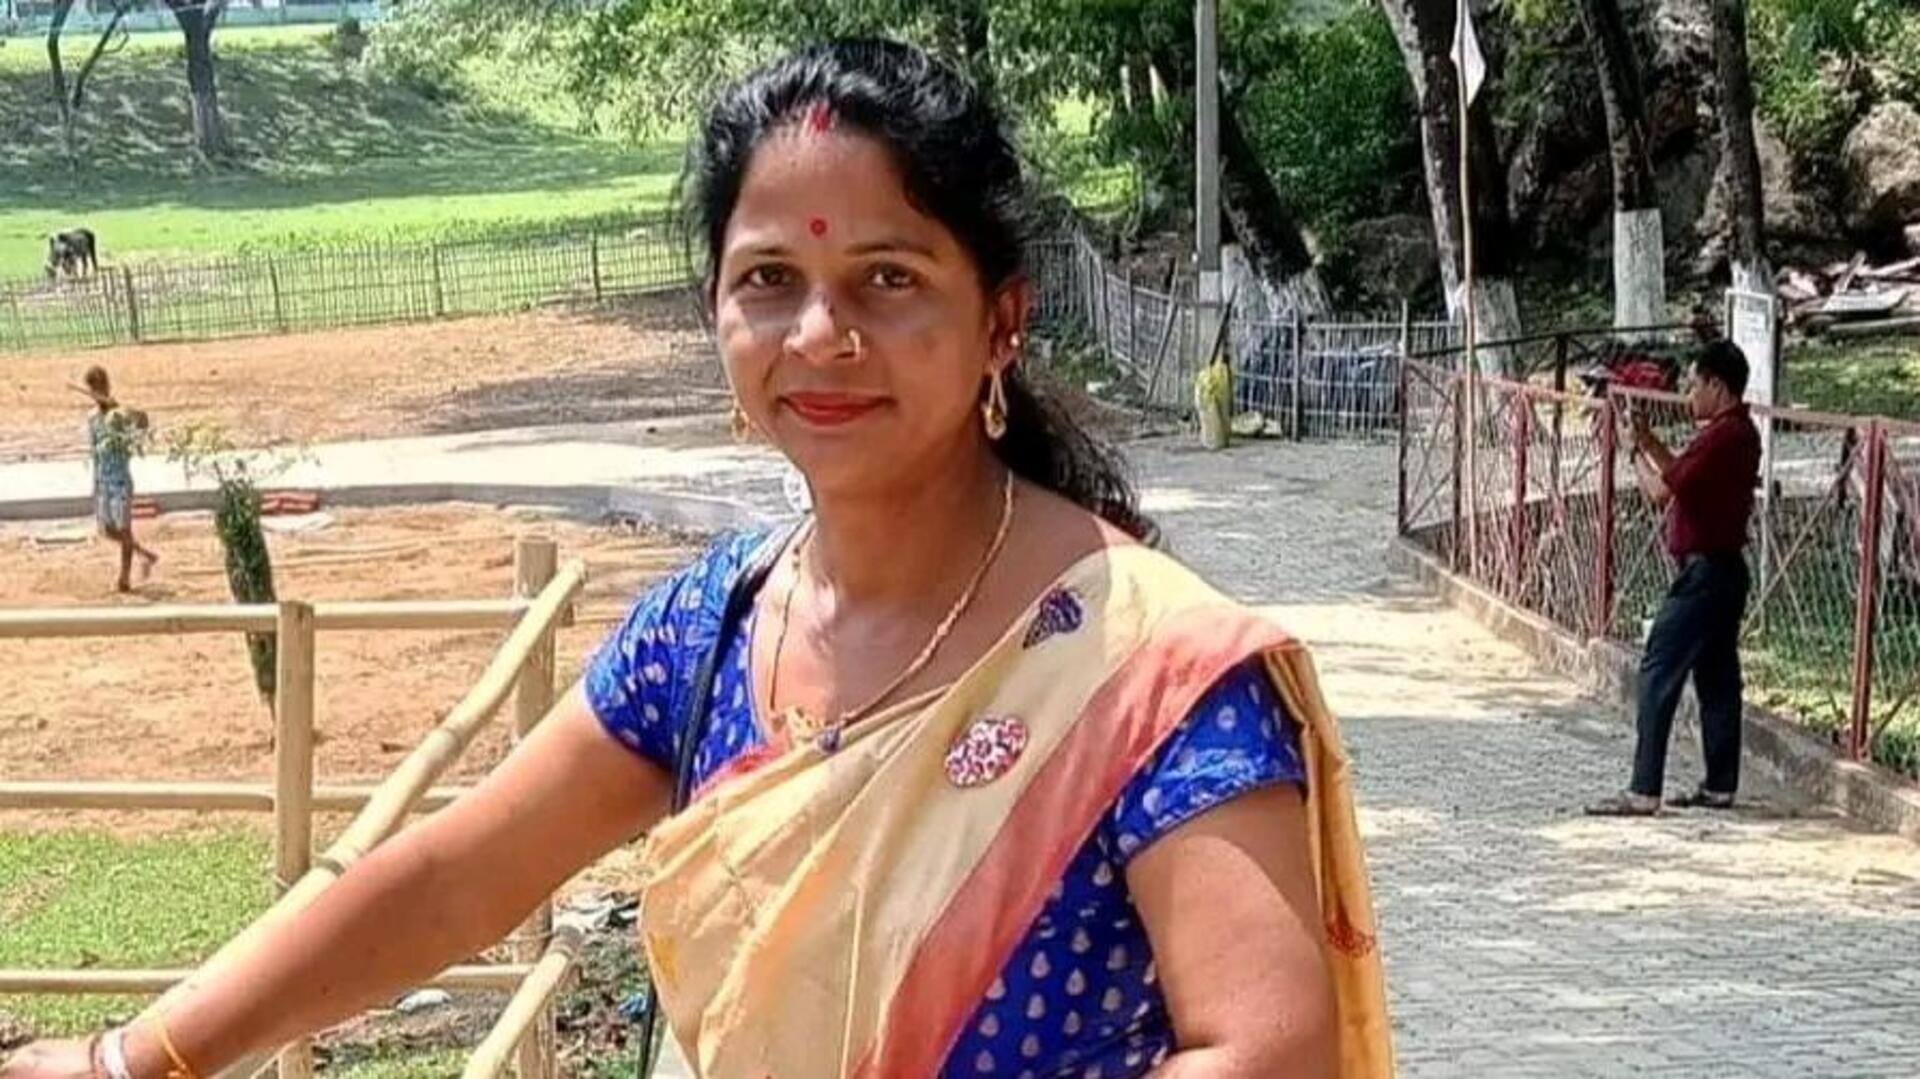 असम: राष्ट्रीय राजमार्ग के पास मृत मिलीं भाजपा की महिला नेता, हत्या की आशंका